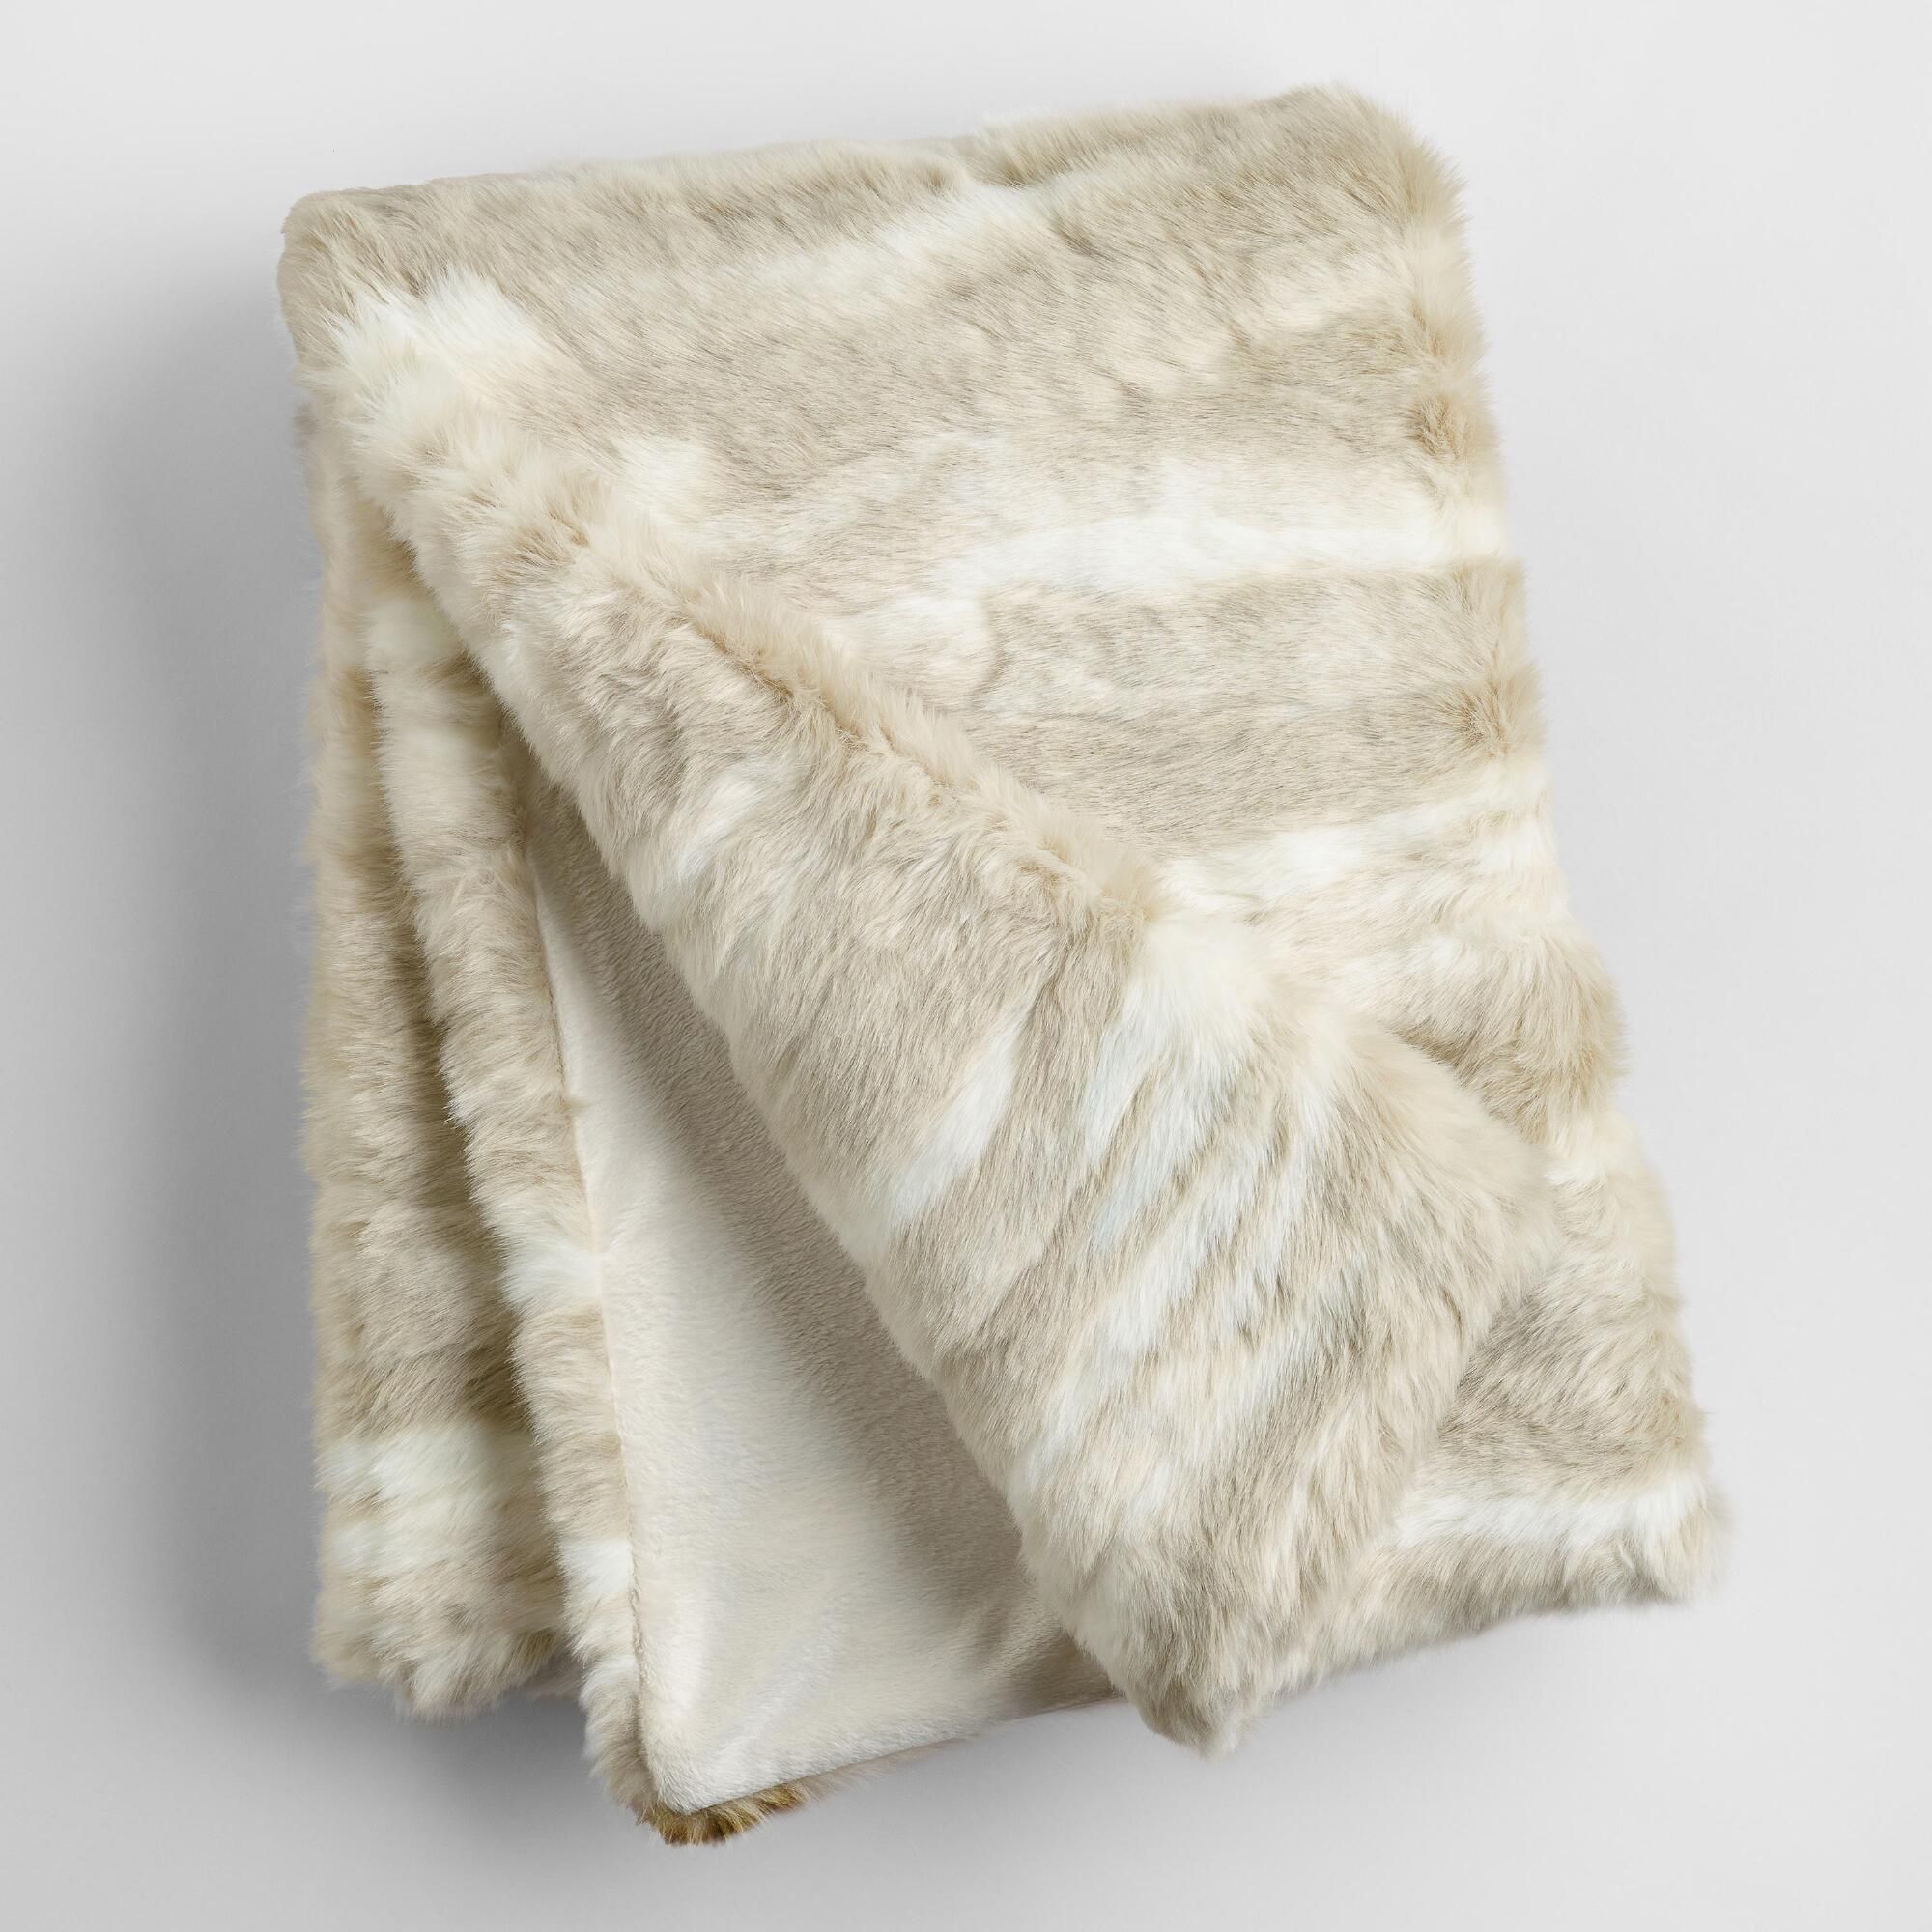 Ivory Faux Fur Throw: White - 40Inx60In by World Market 40Inx60In | World Market